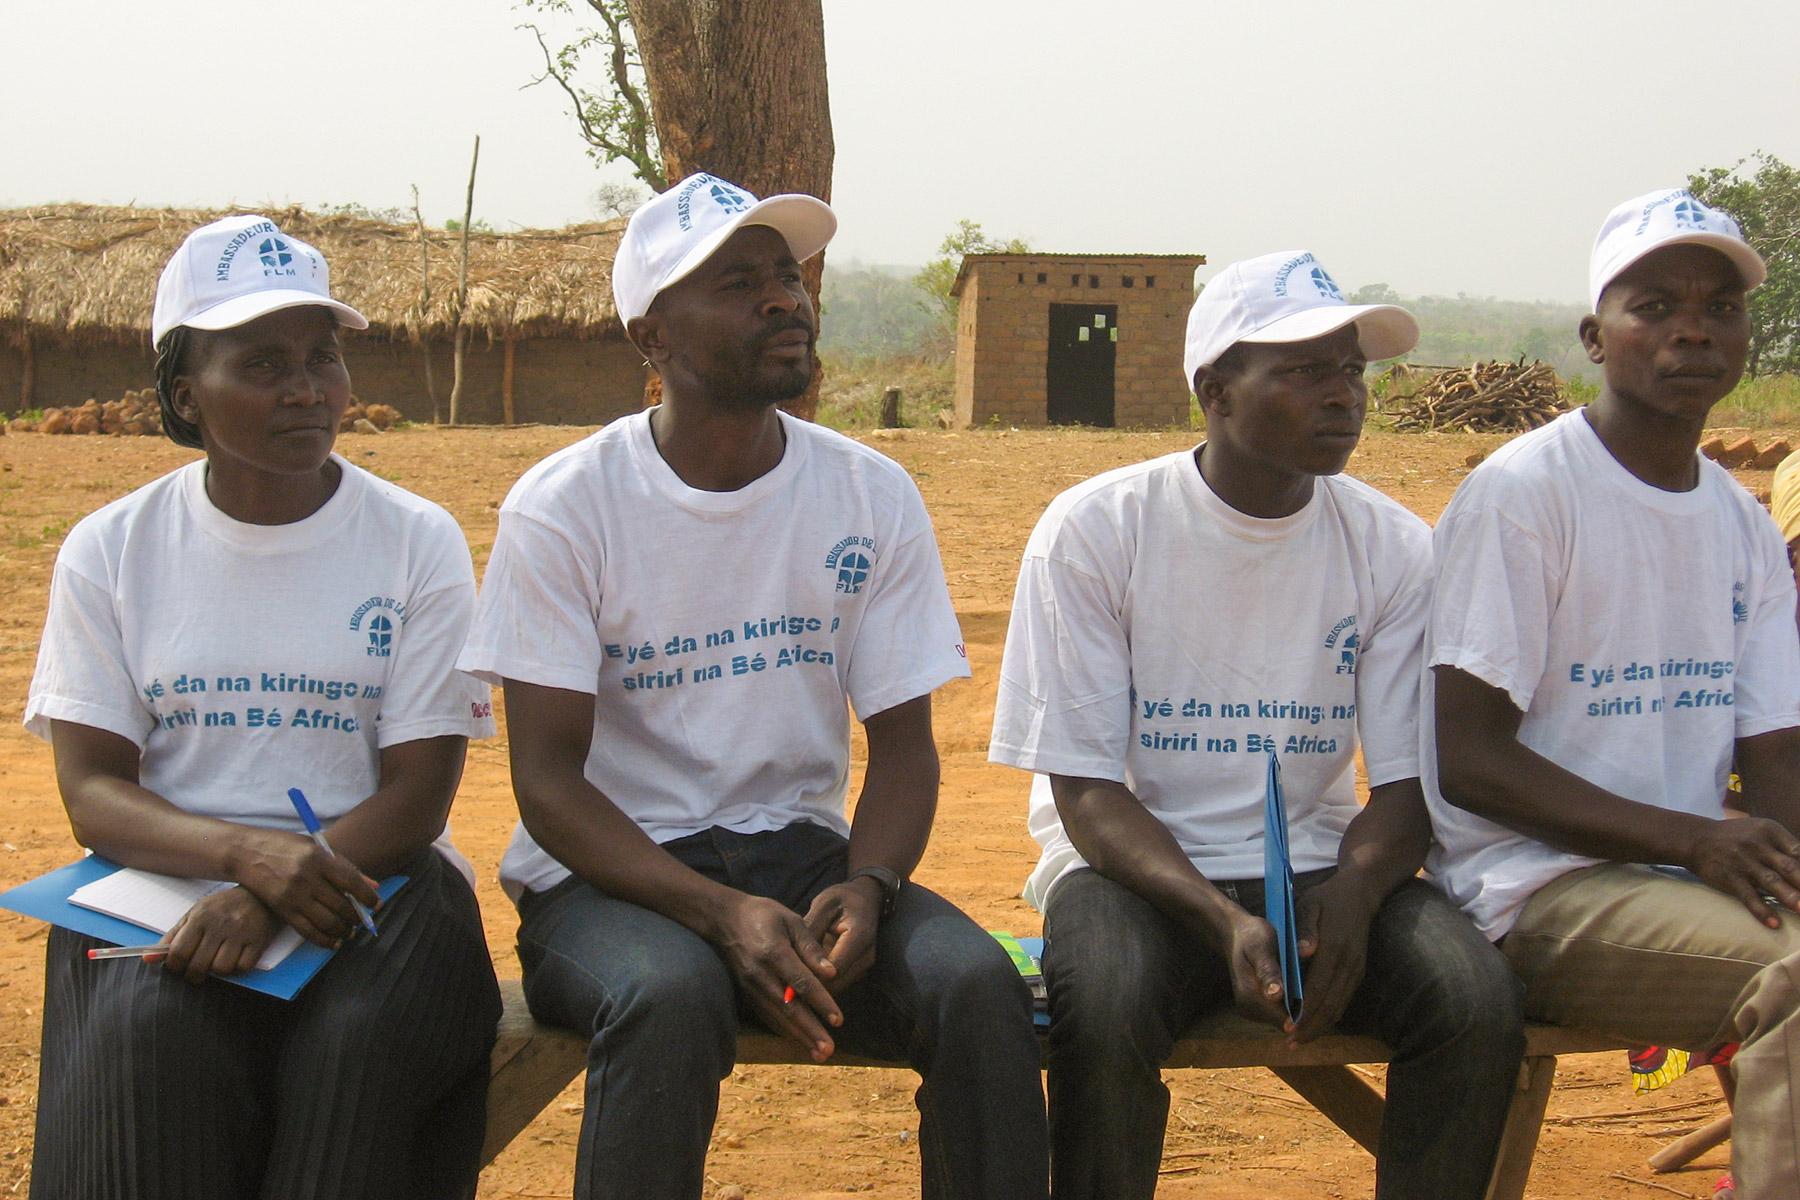 LWB-Friedensbotschafterinnen und -botschafter 2017 in der Zentralafrikanischen Republik. Die jungen Männer und Frauen wurden ausgebildet, um bei Konflikten in ihren Gemeinschaften als Mediatorinnen und Mediatoren zu fungieren. Foto: Els Hortensius, ICCO und Kerk in Actie